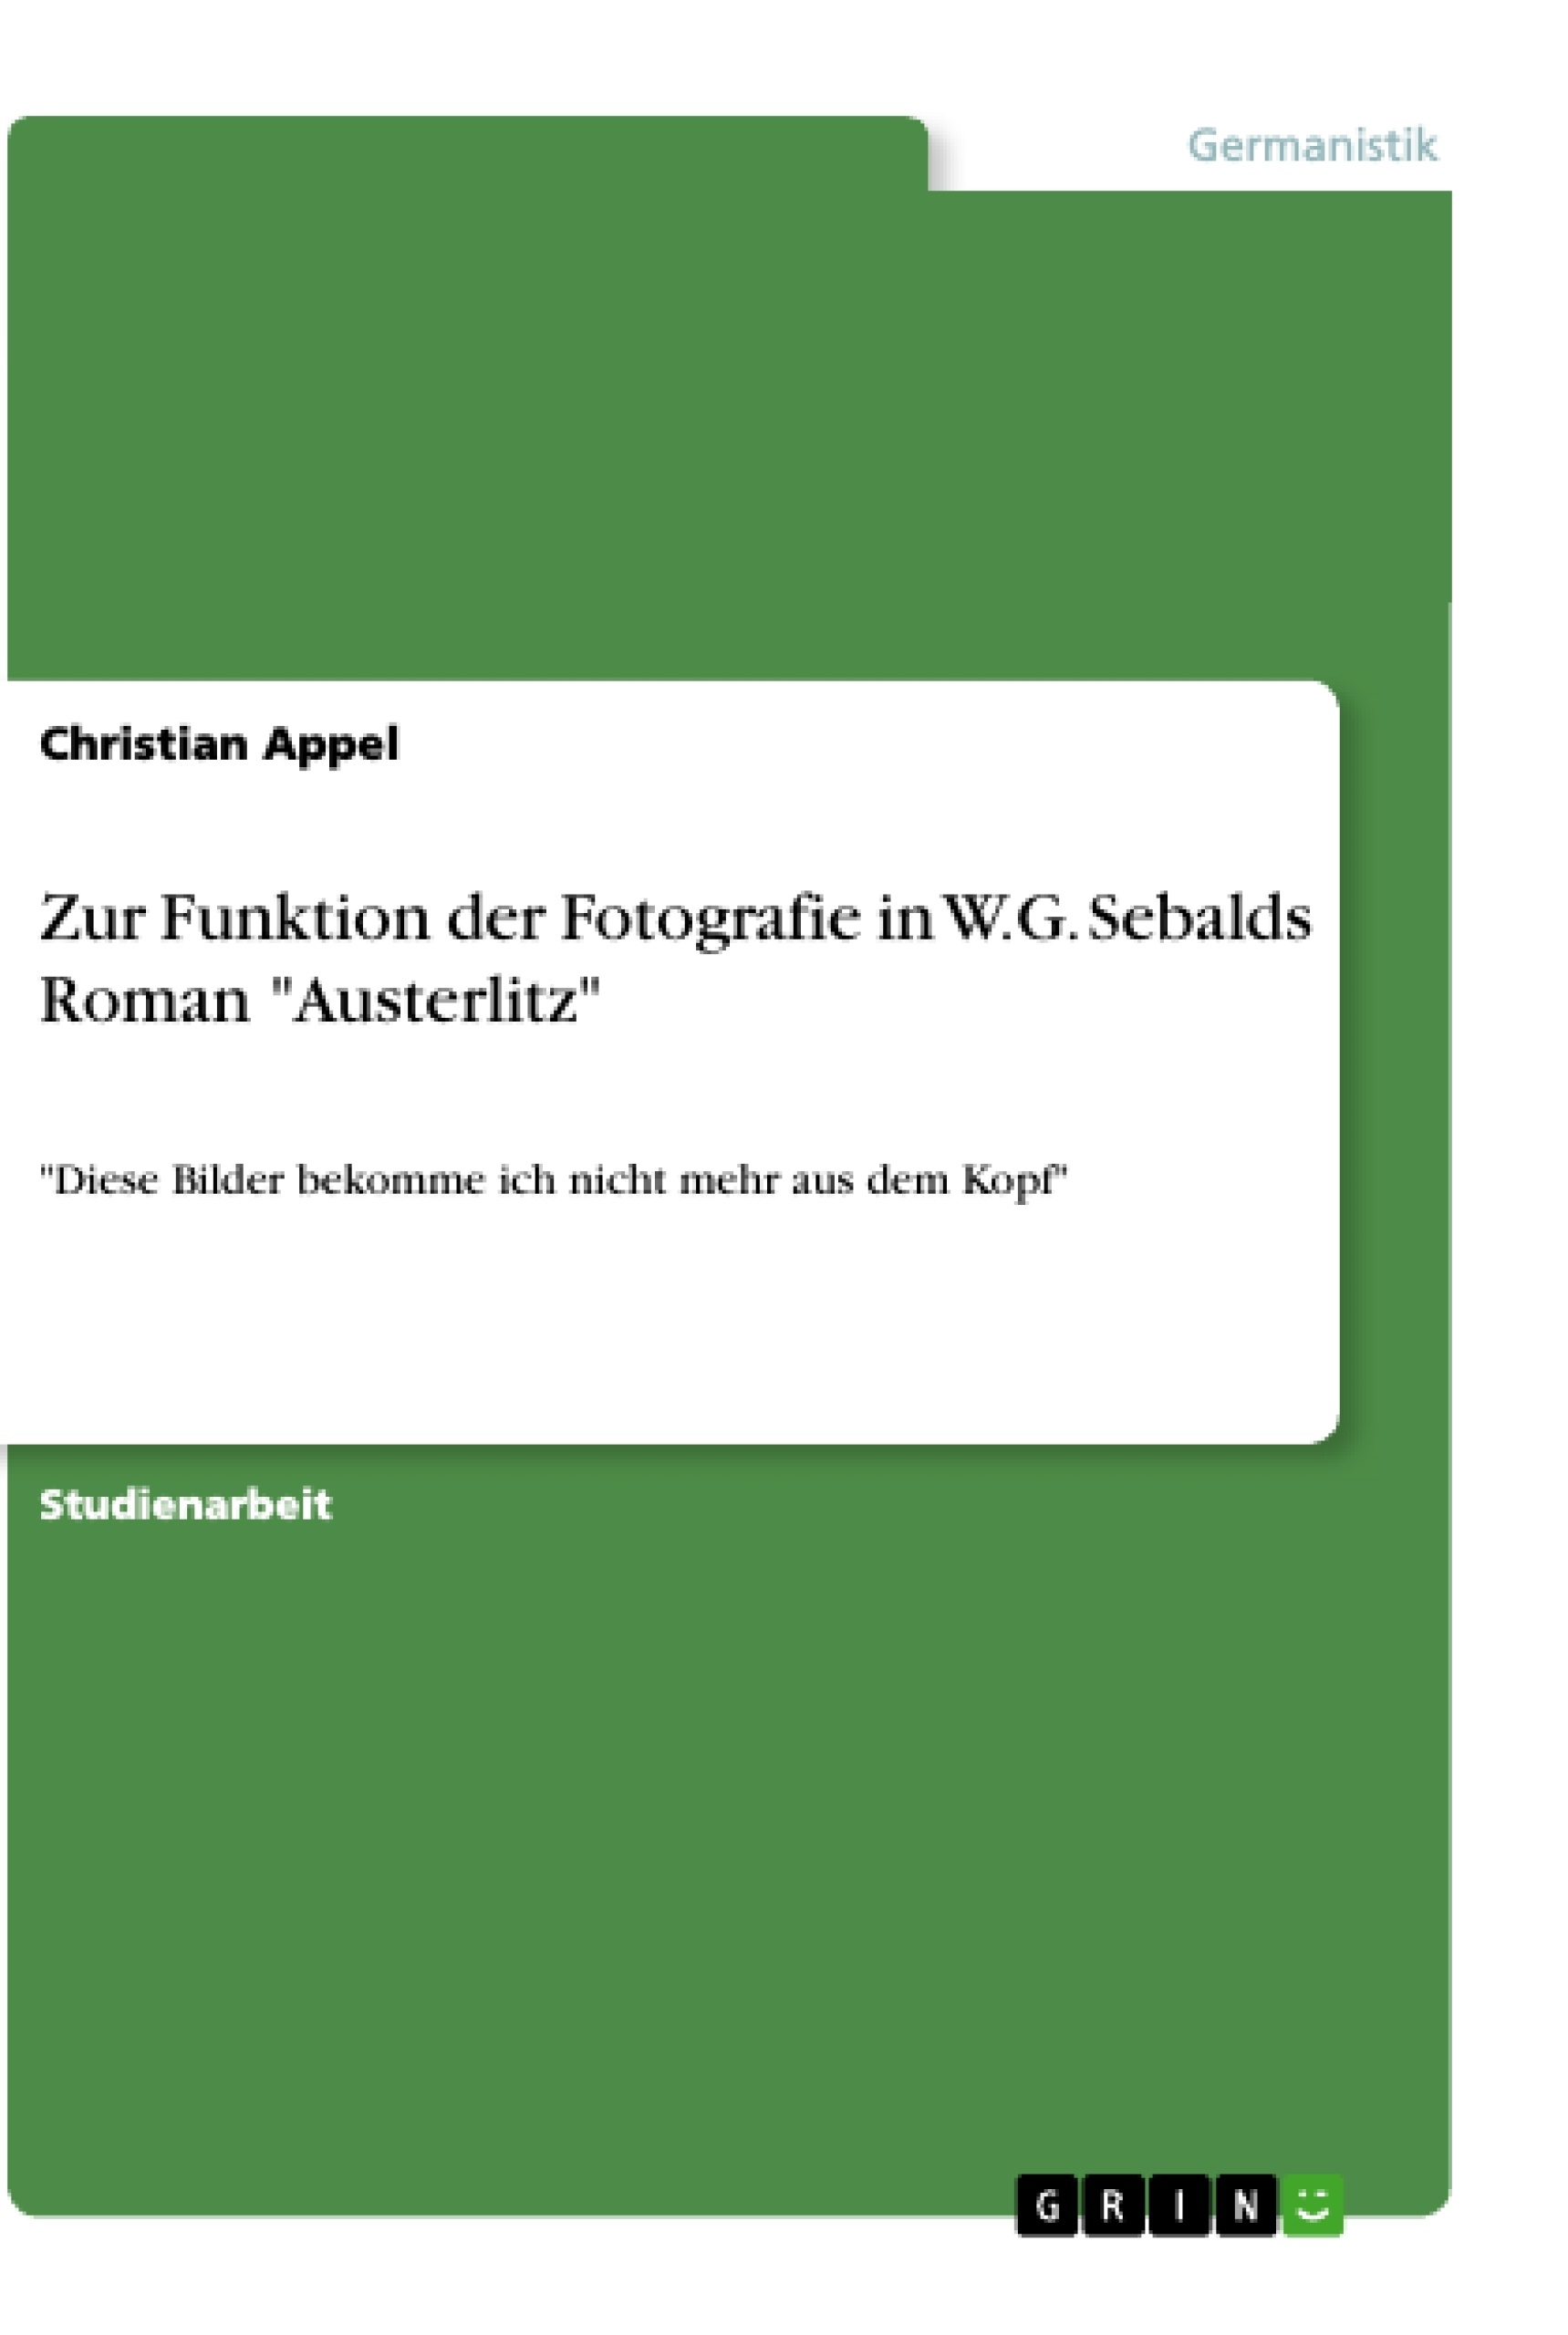 Titre: Zur Funktion der Fotografie in W.G. Sebalds Roman "Austerlitz"